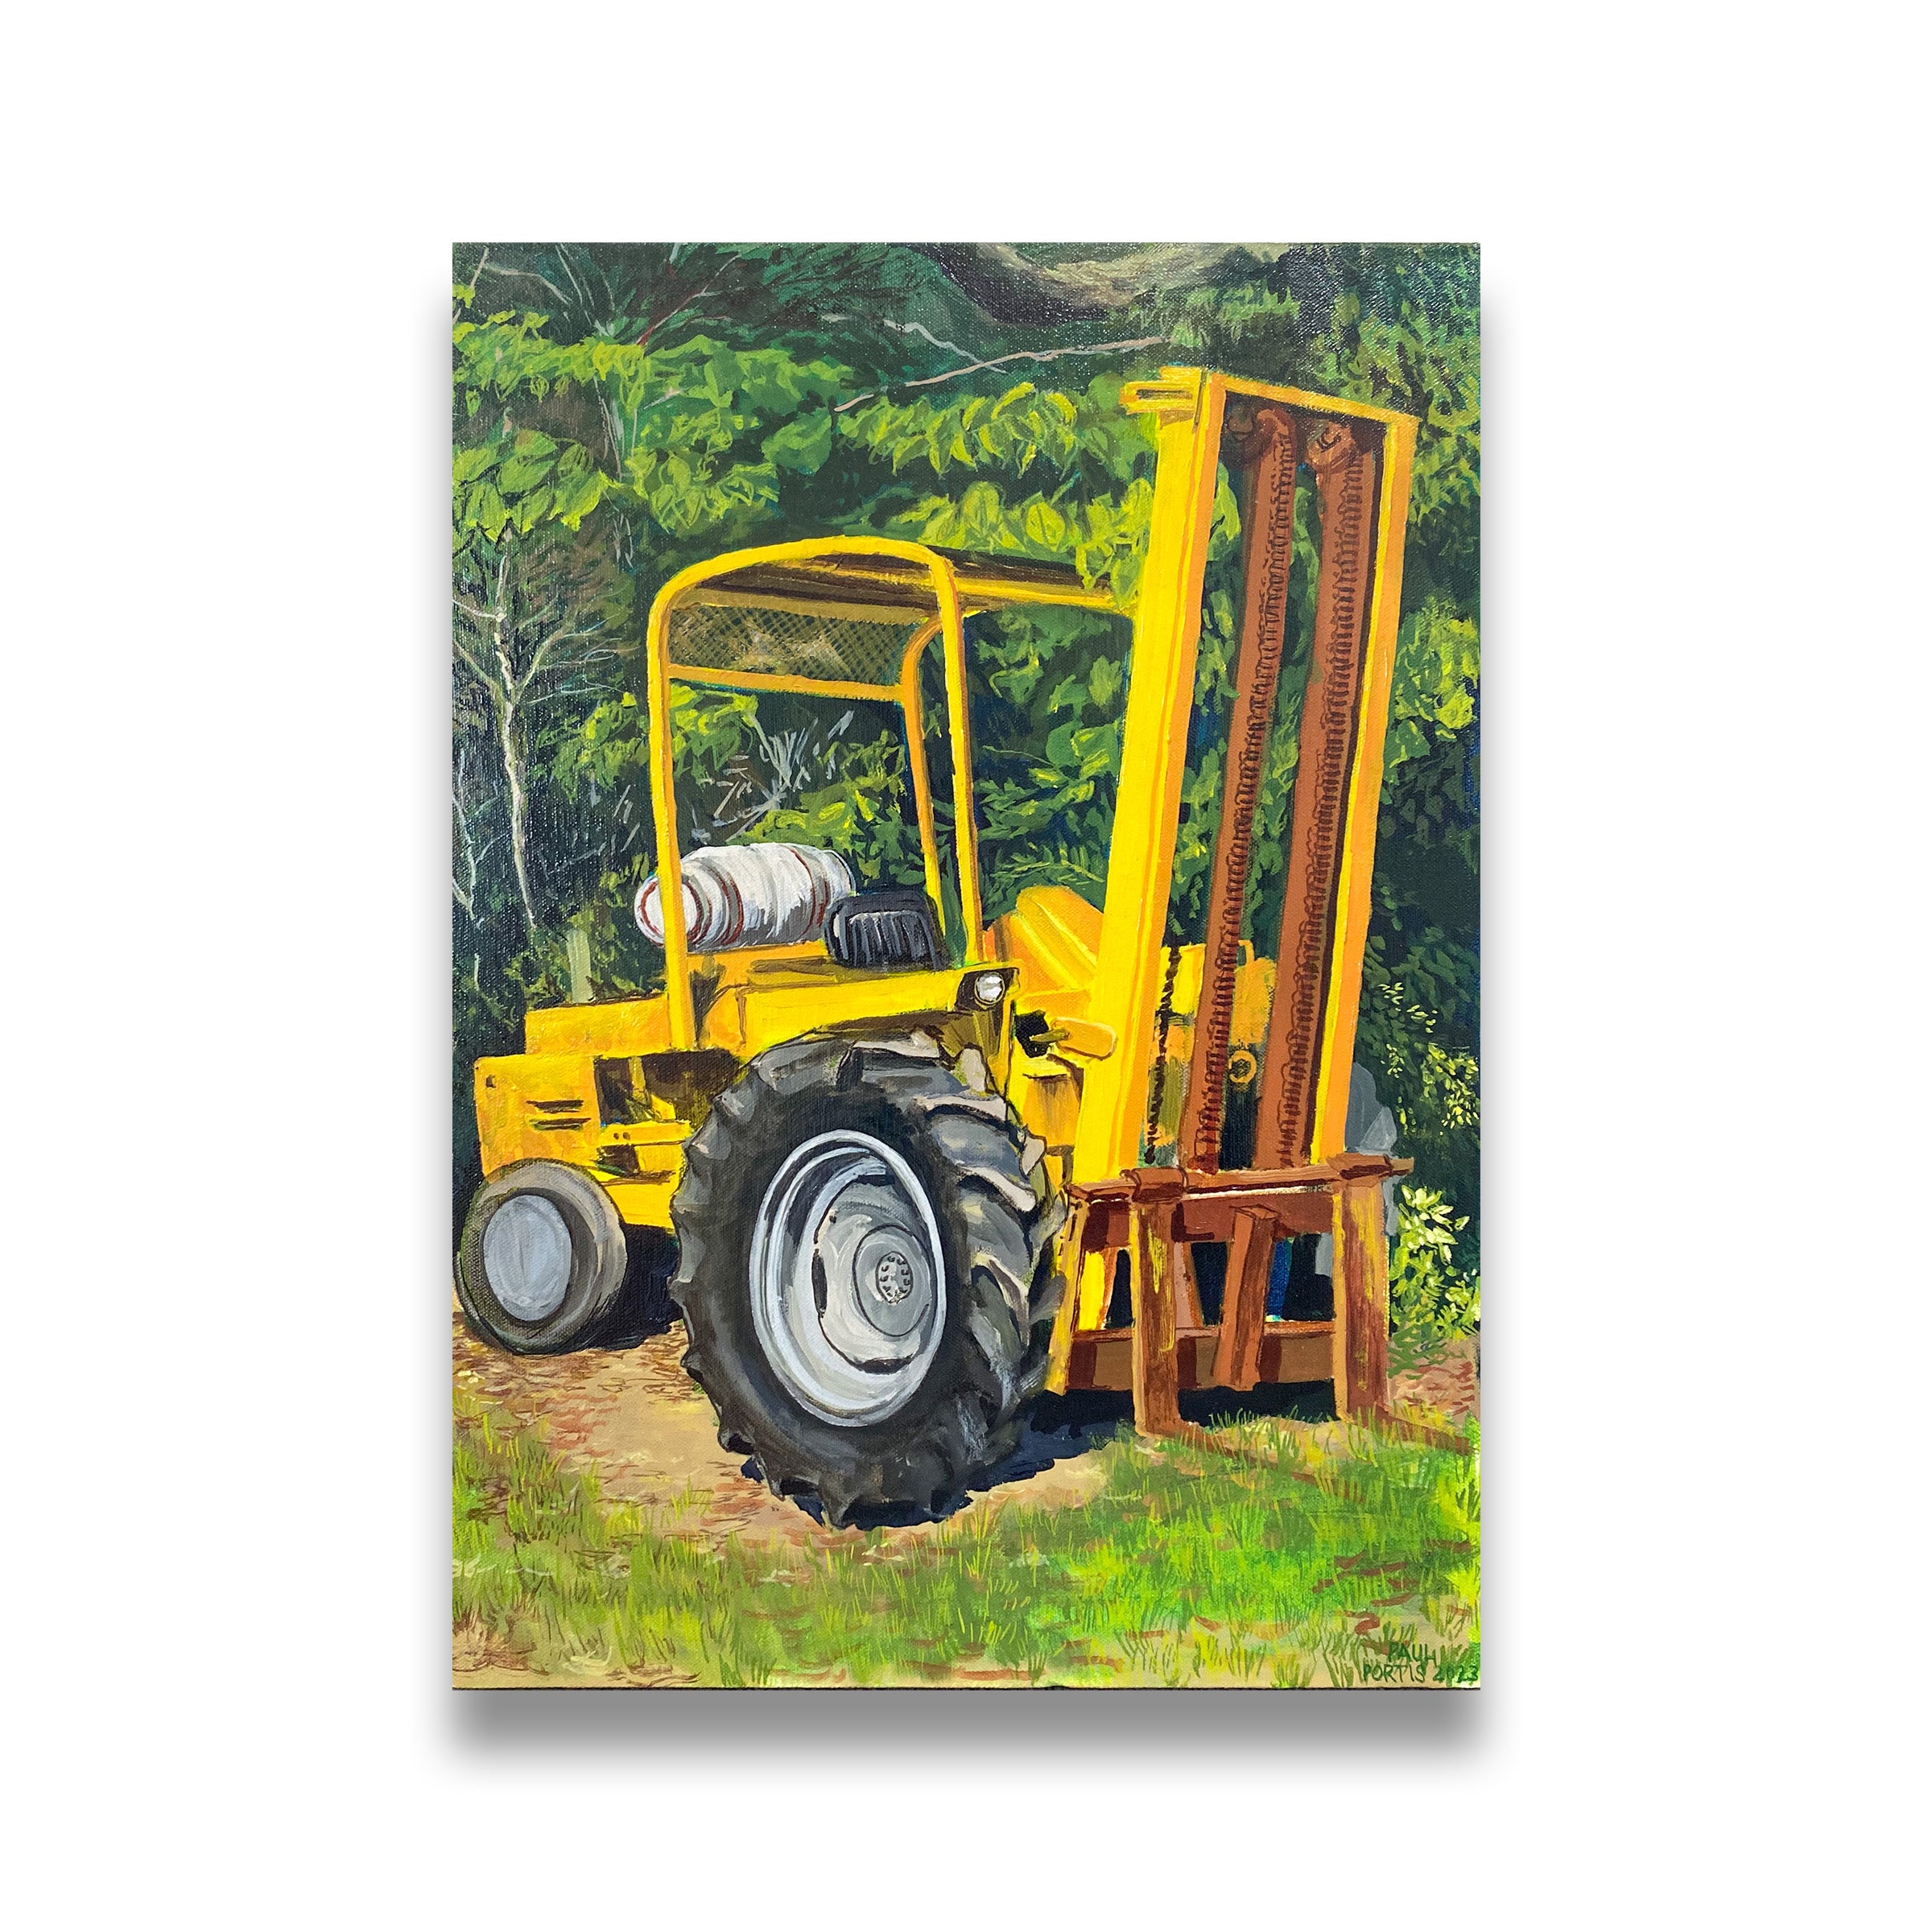 Older Forklift – Caron Gallery